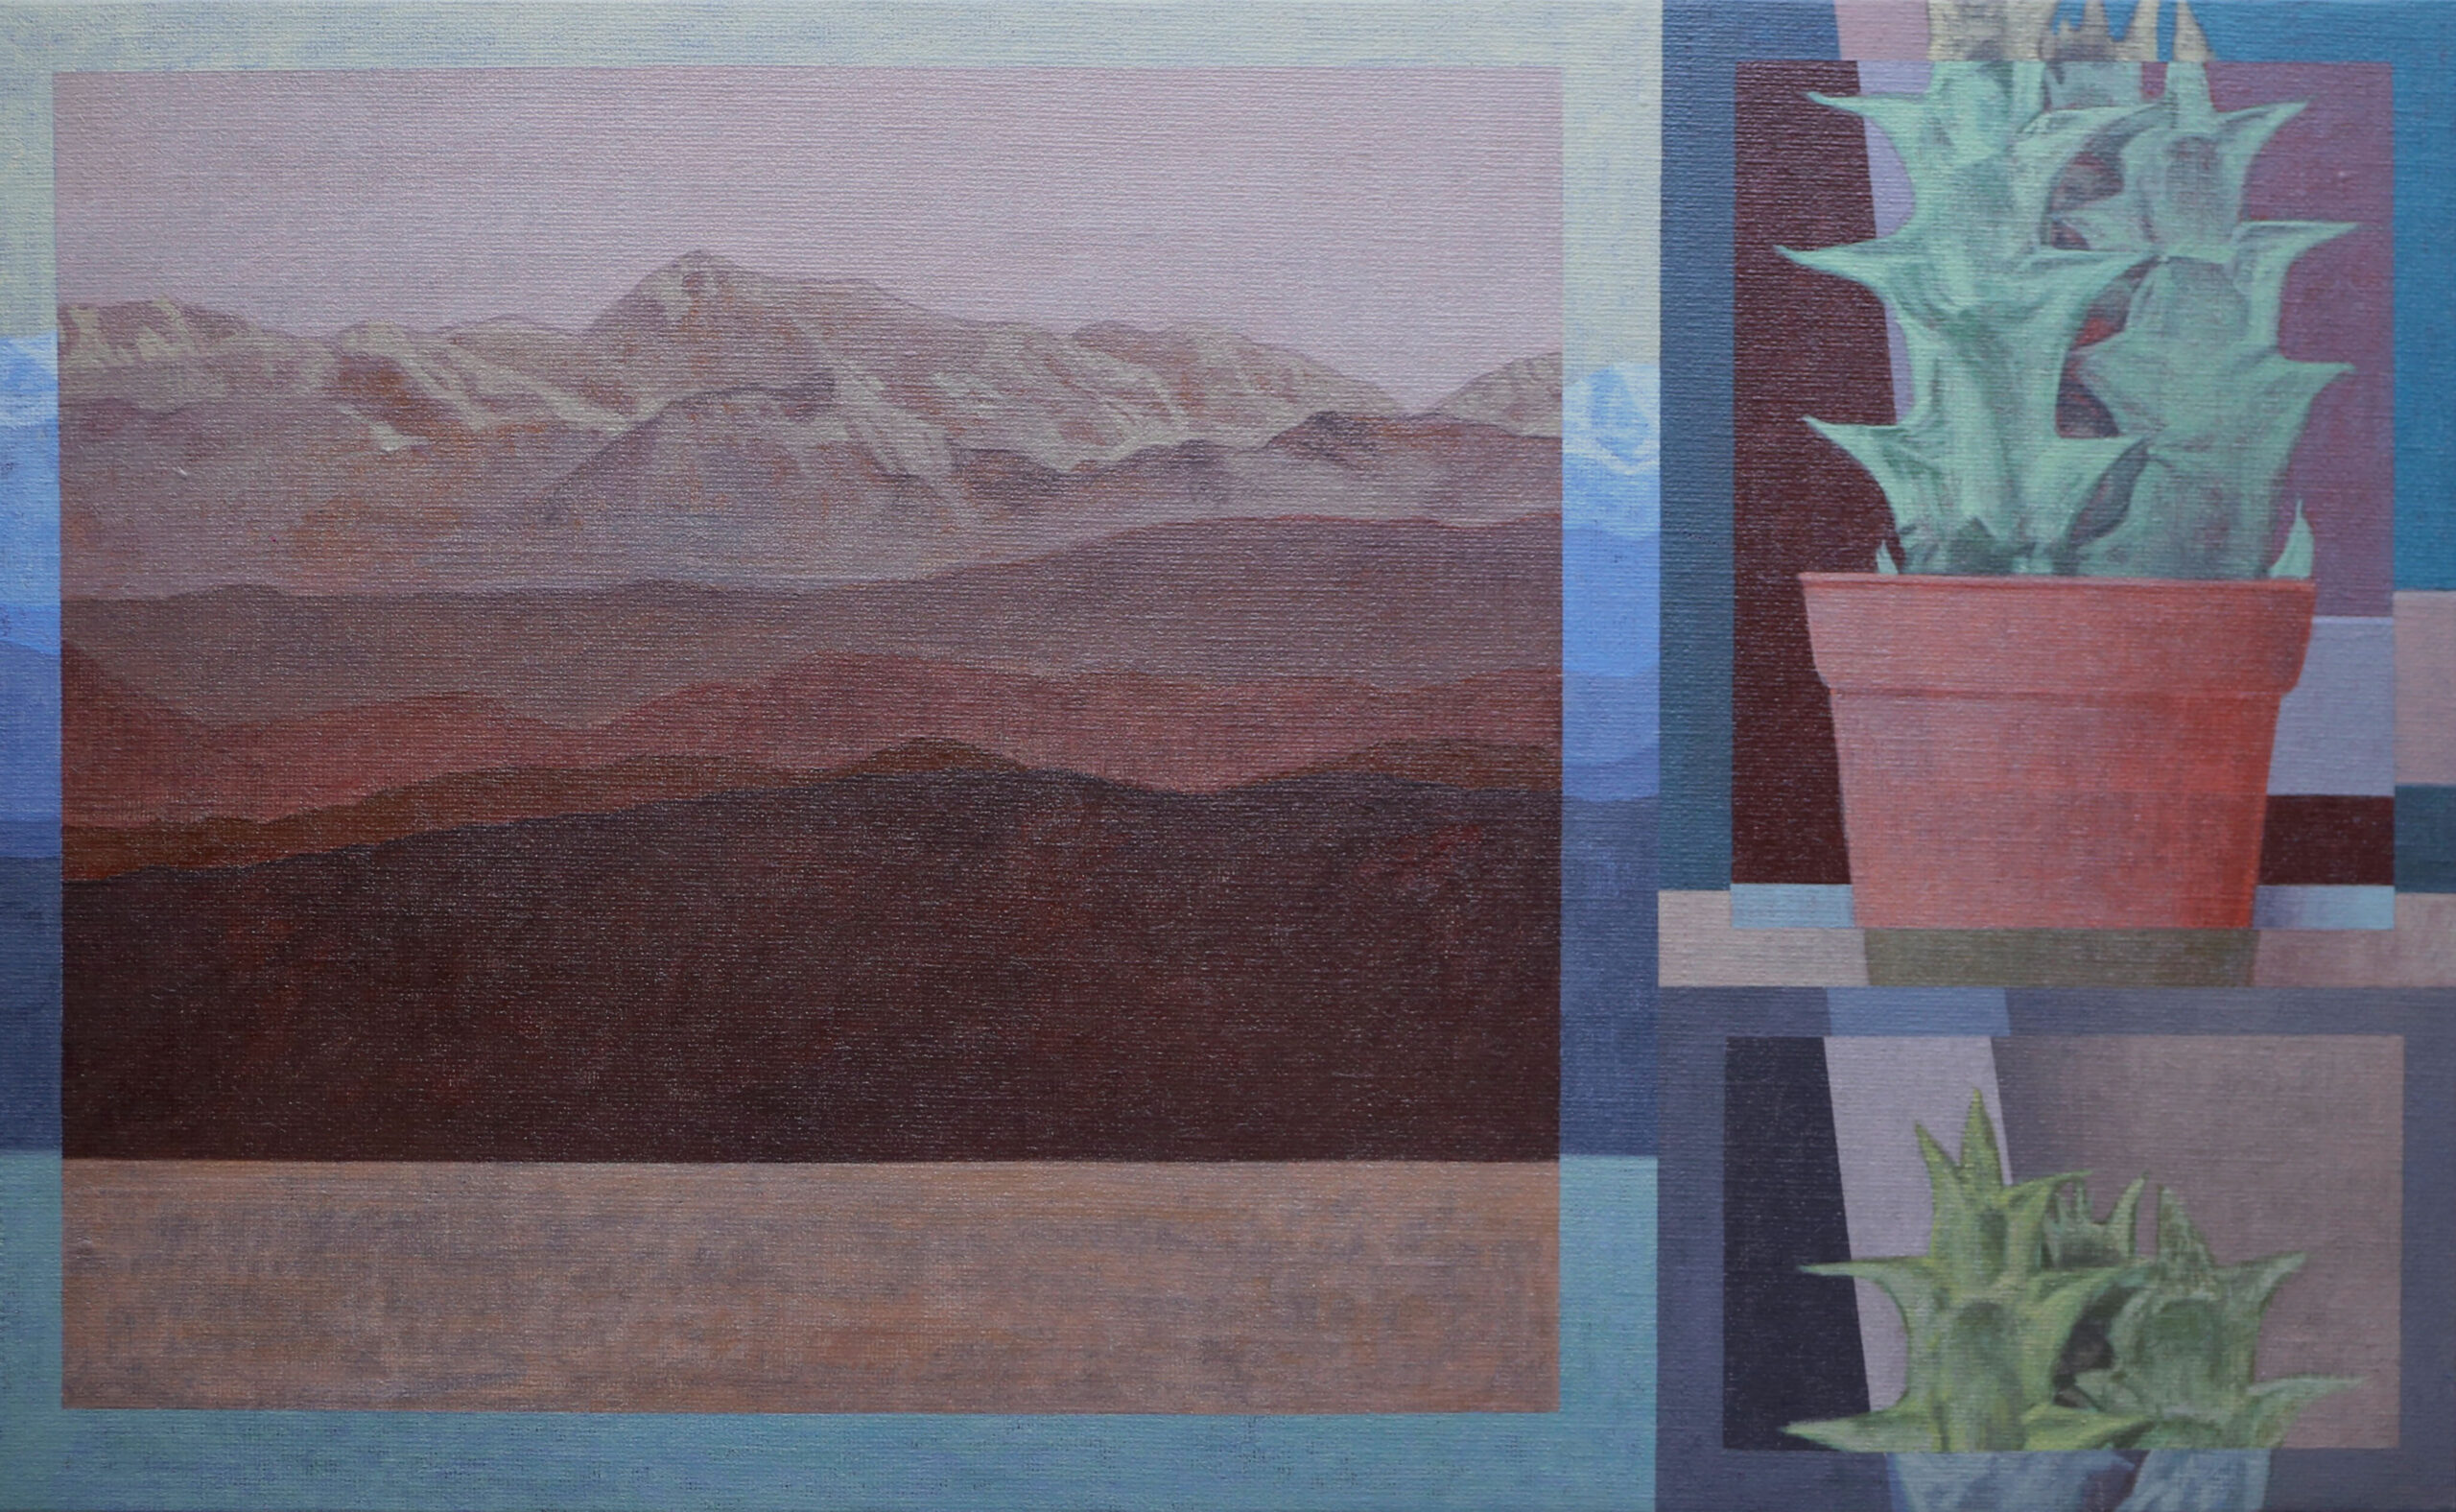 Mountain and Cactus – Syawal